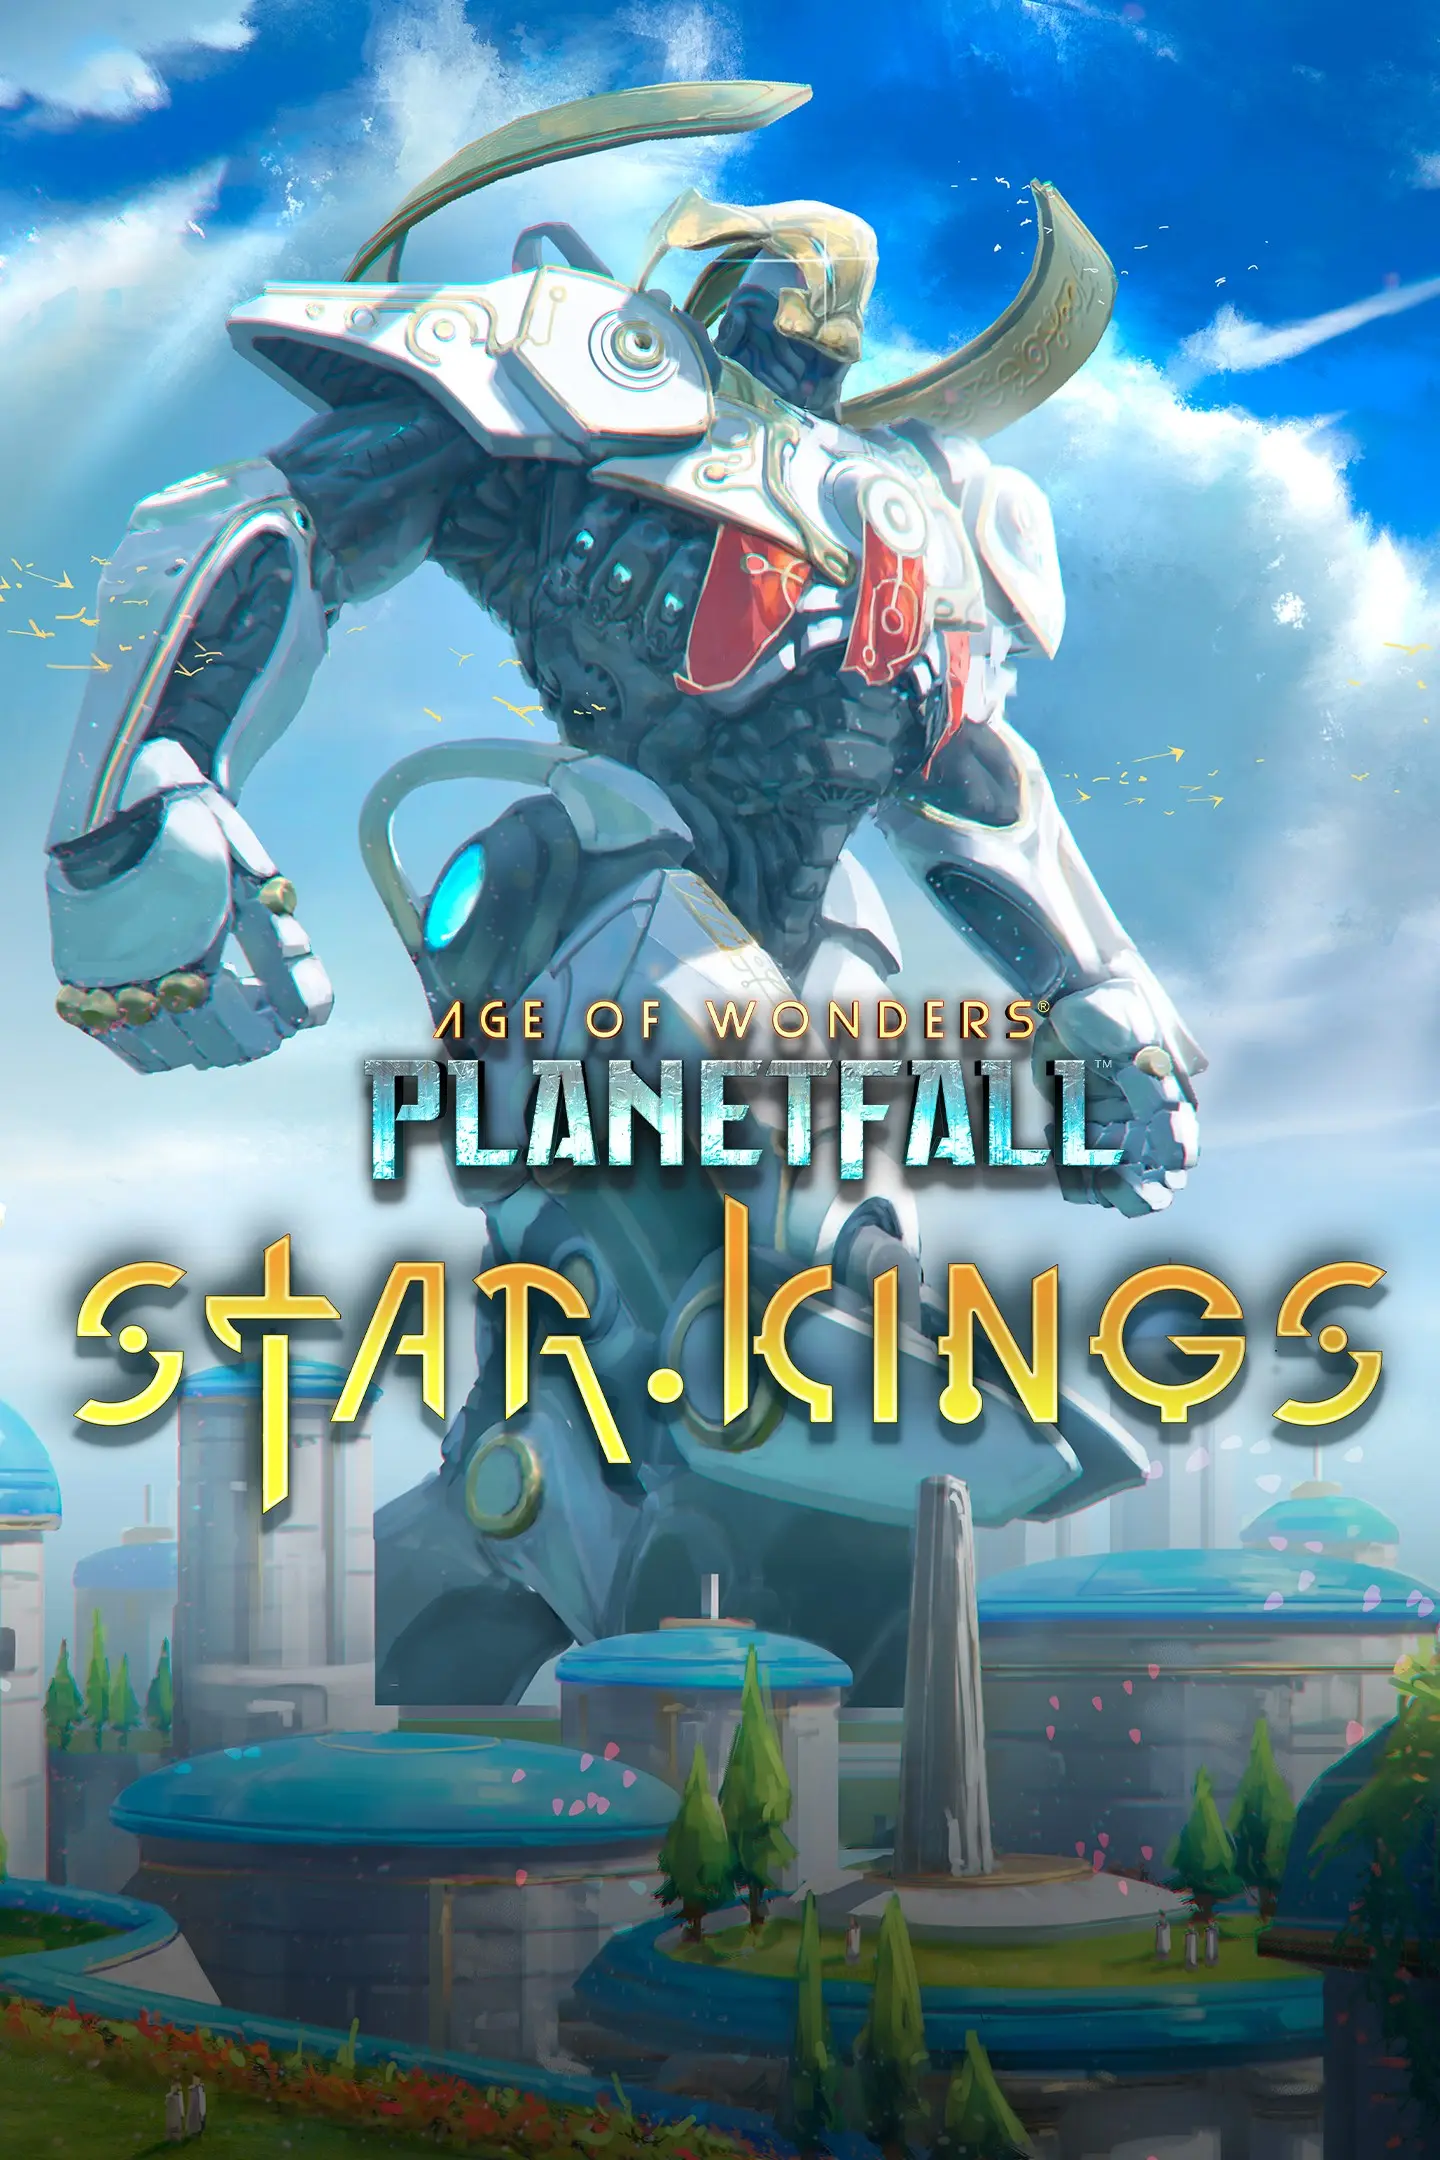 Age of Wonders: Planetfall - Star Kings (PC / Mac) - Steam - Digital Code